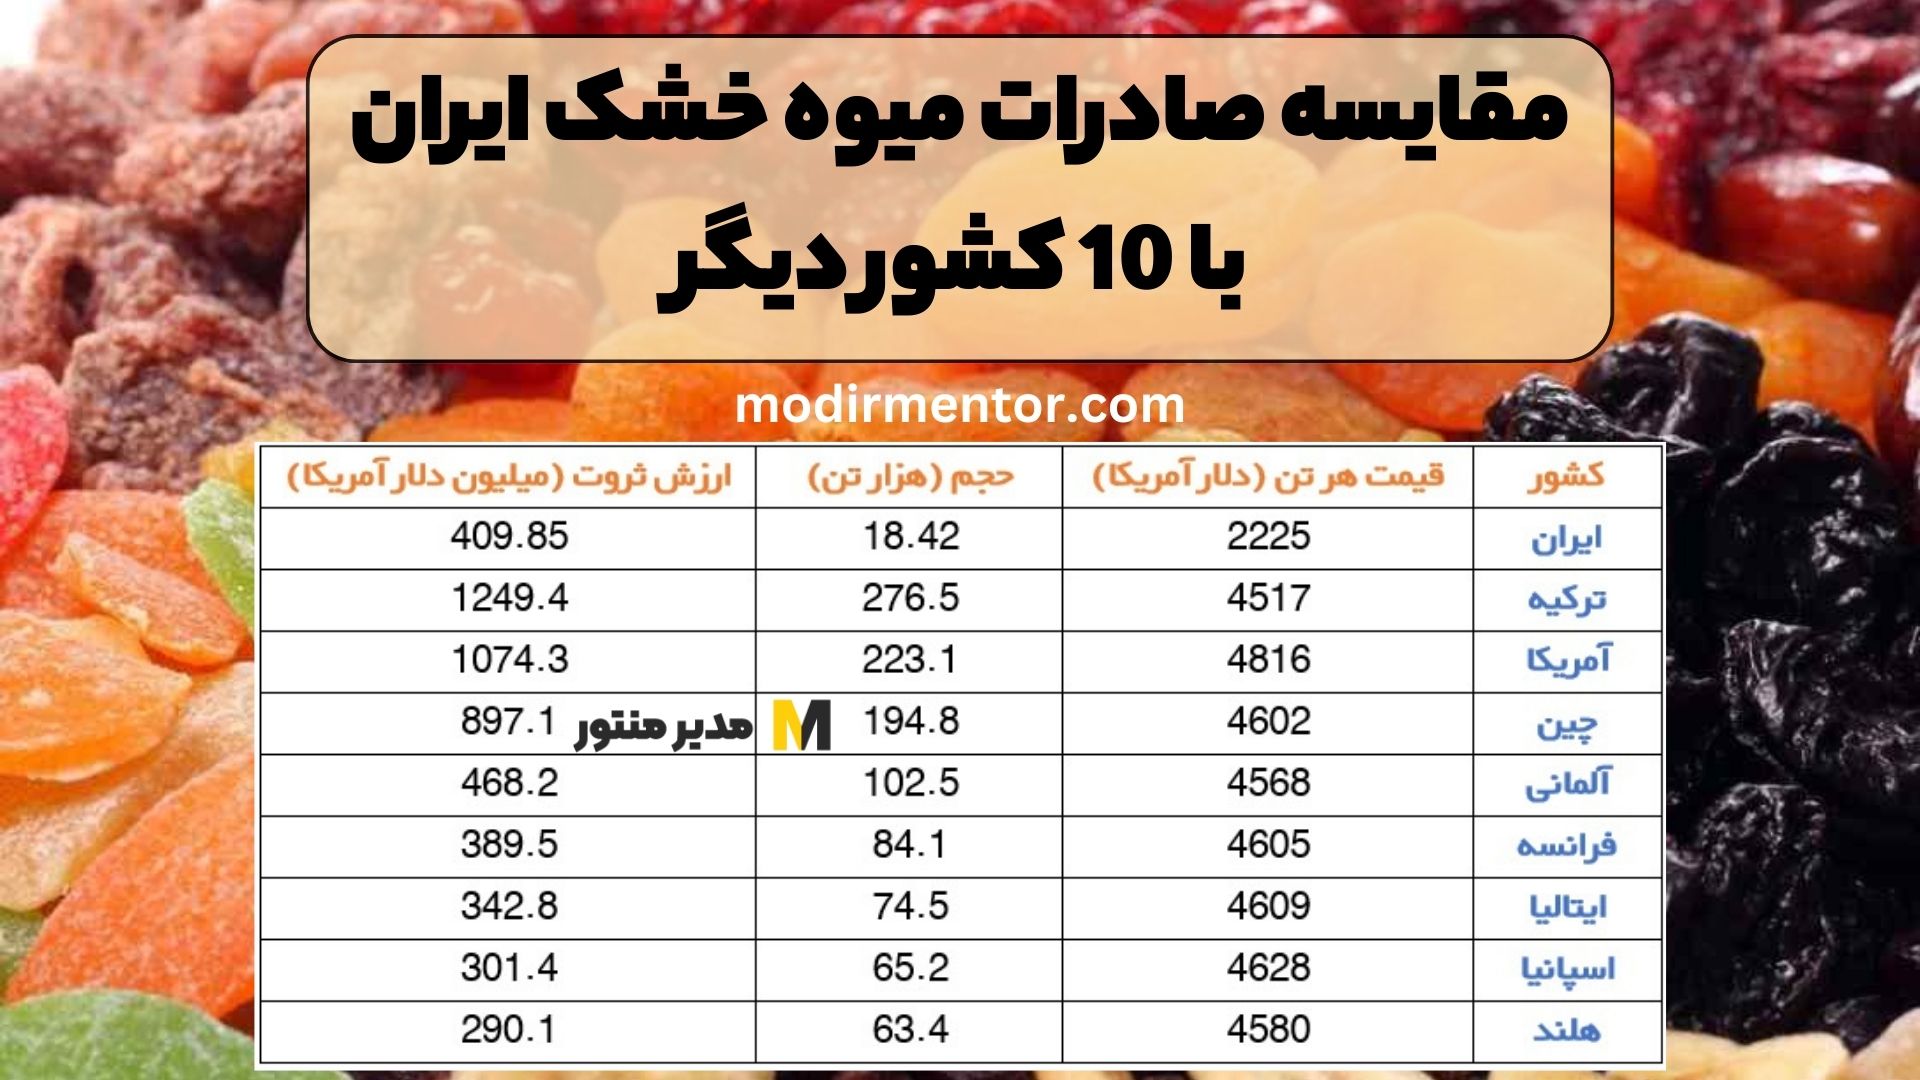 مقایسه صادرات میوه خشک ایران با 10 کشور دیگر